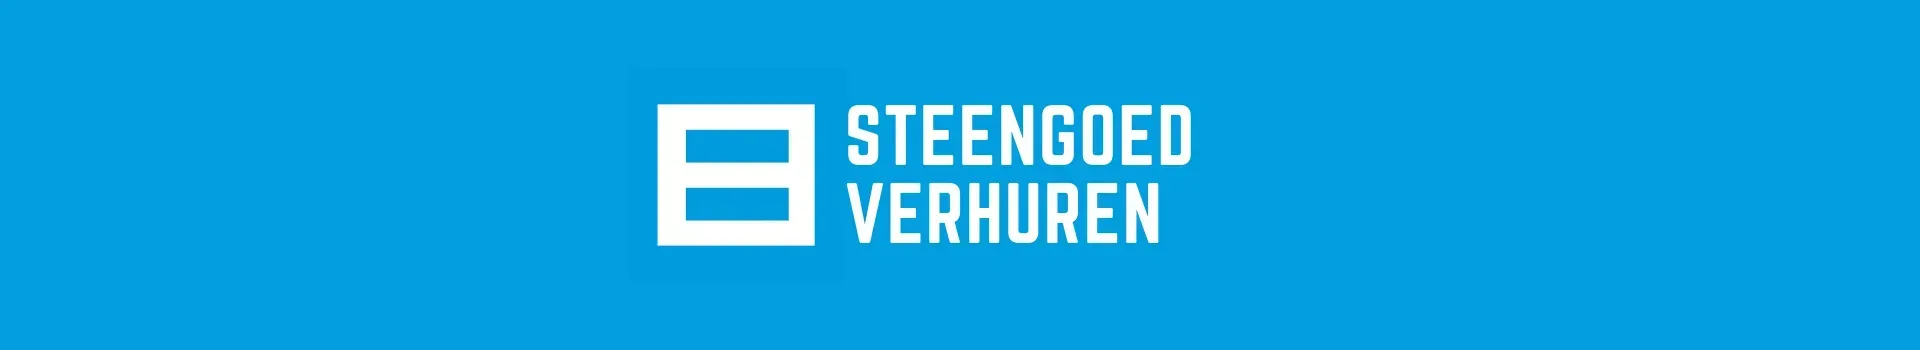 Steenhuis VGM | Steengoed verhuren